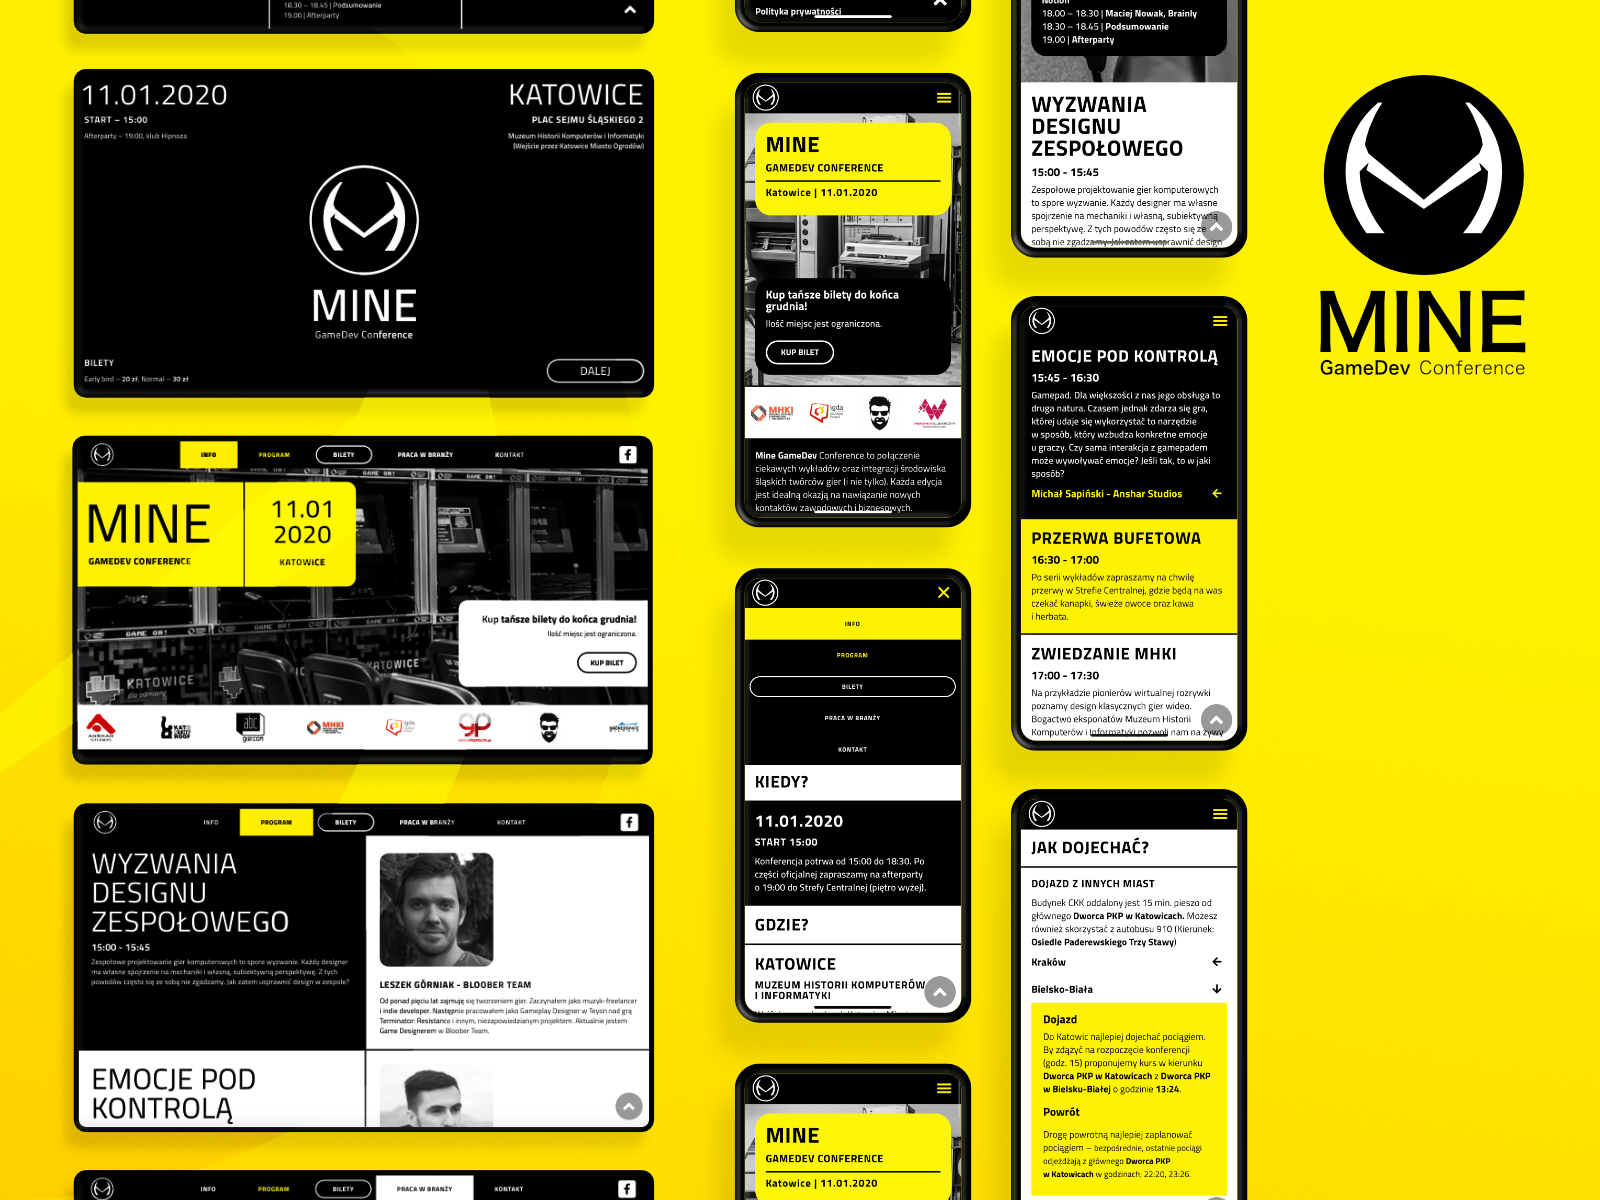 Mine GameDev Conference brand & web design by Wawrzyniec Wróblewski